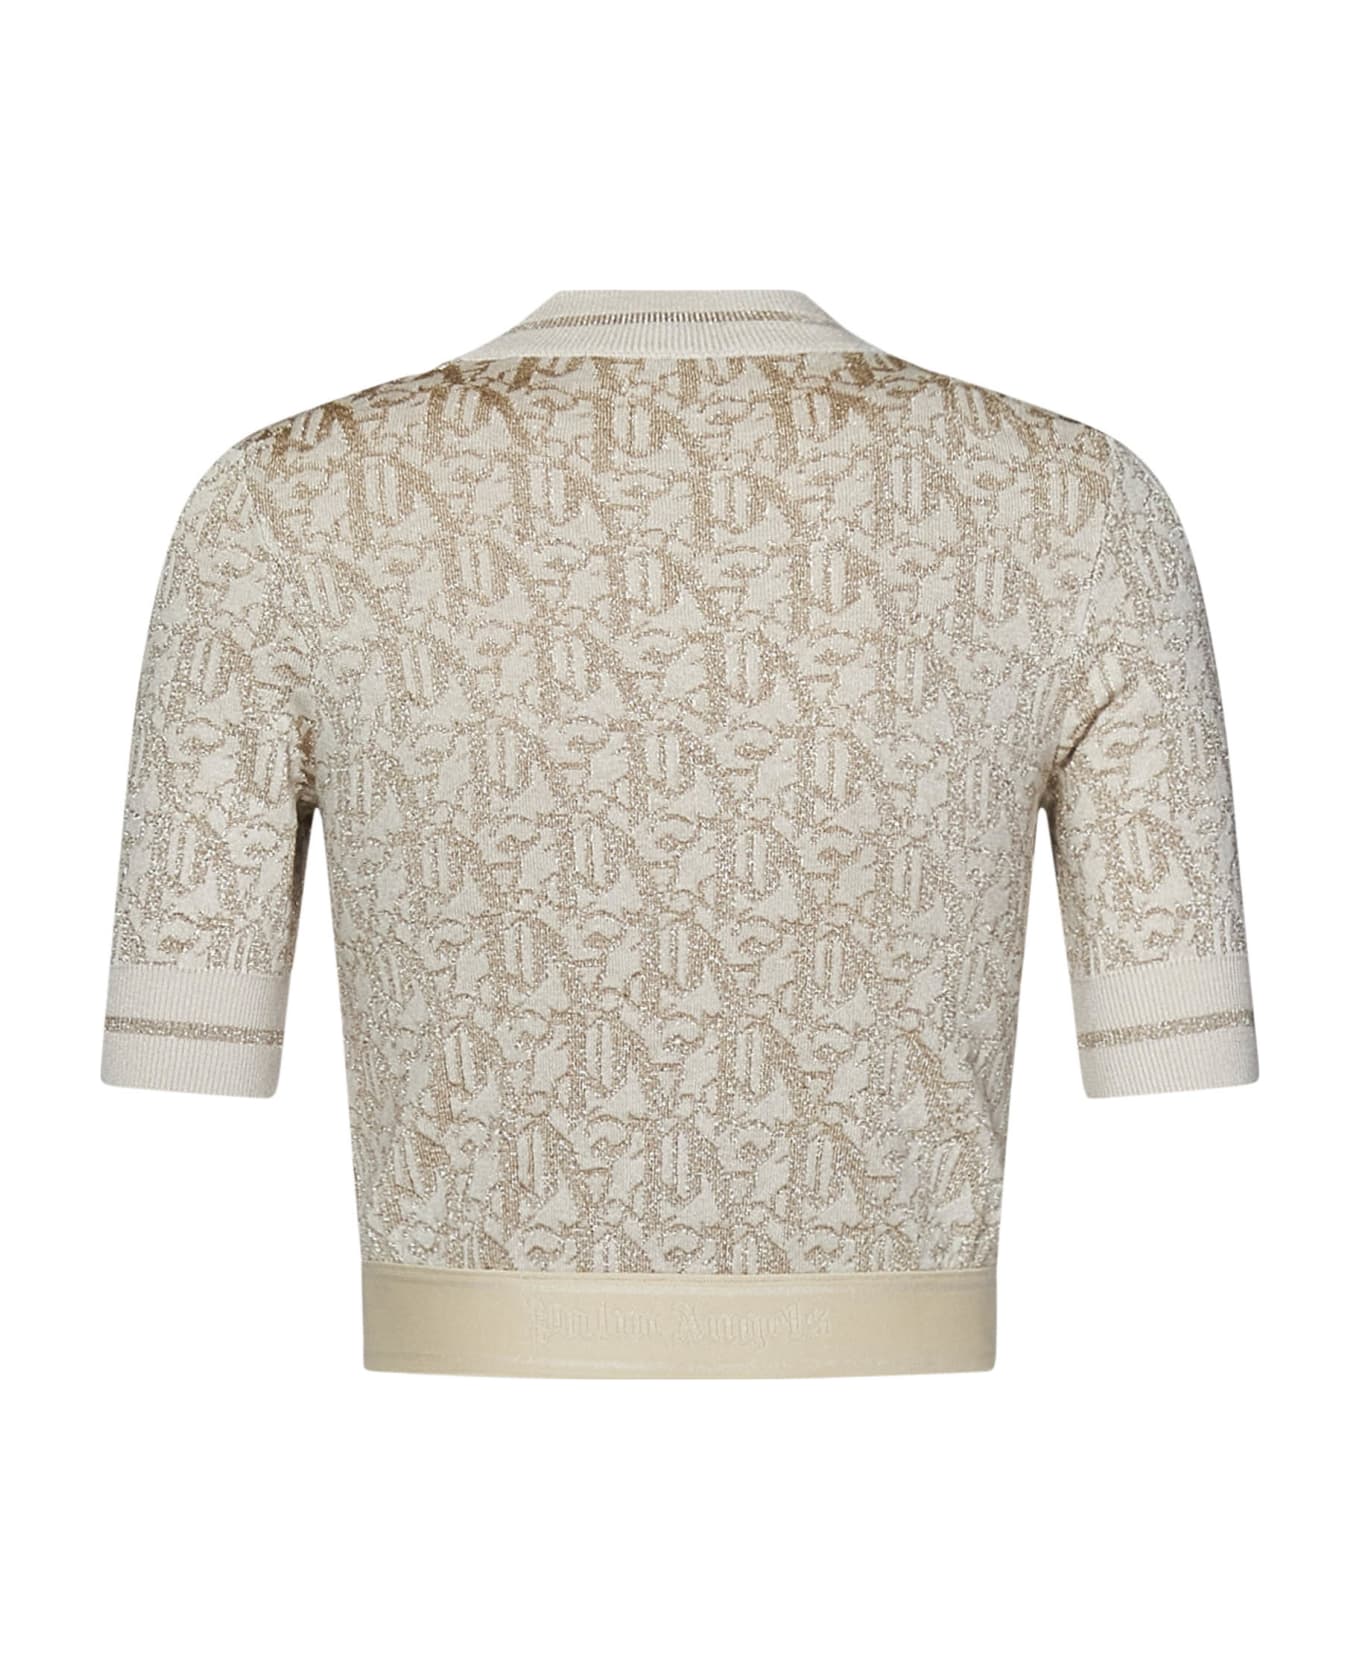 Palm Angels Monogram Sweater - Beige